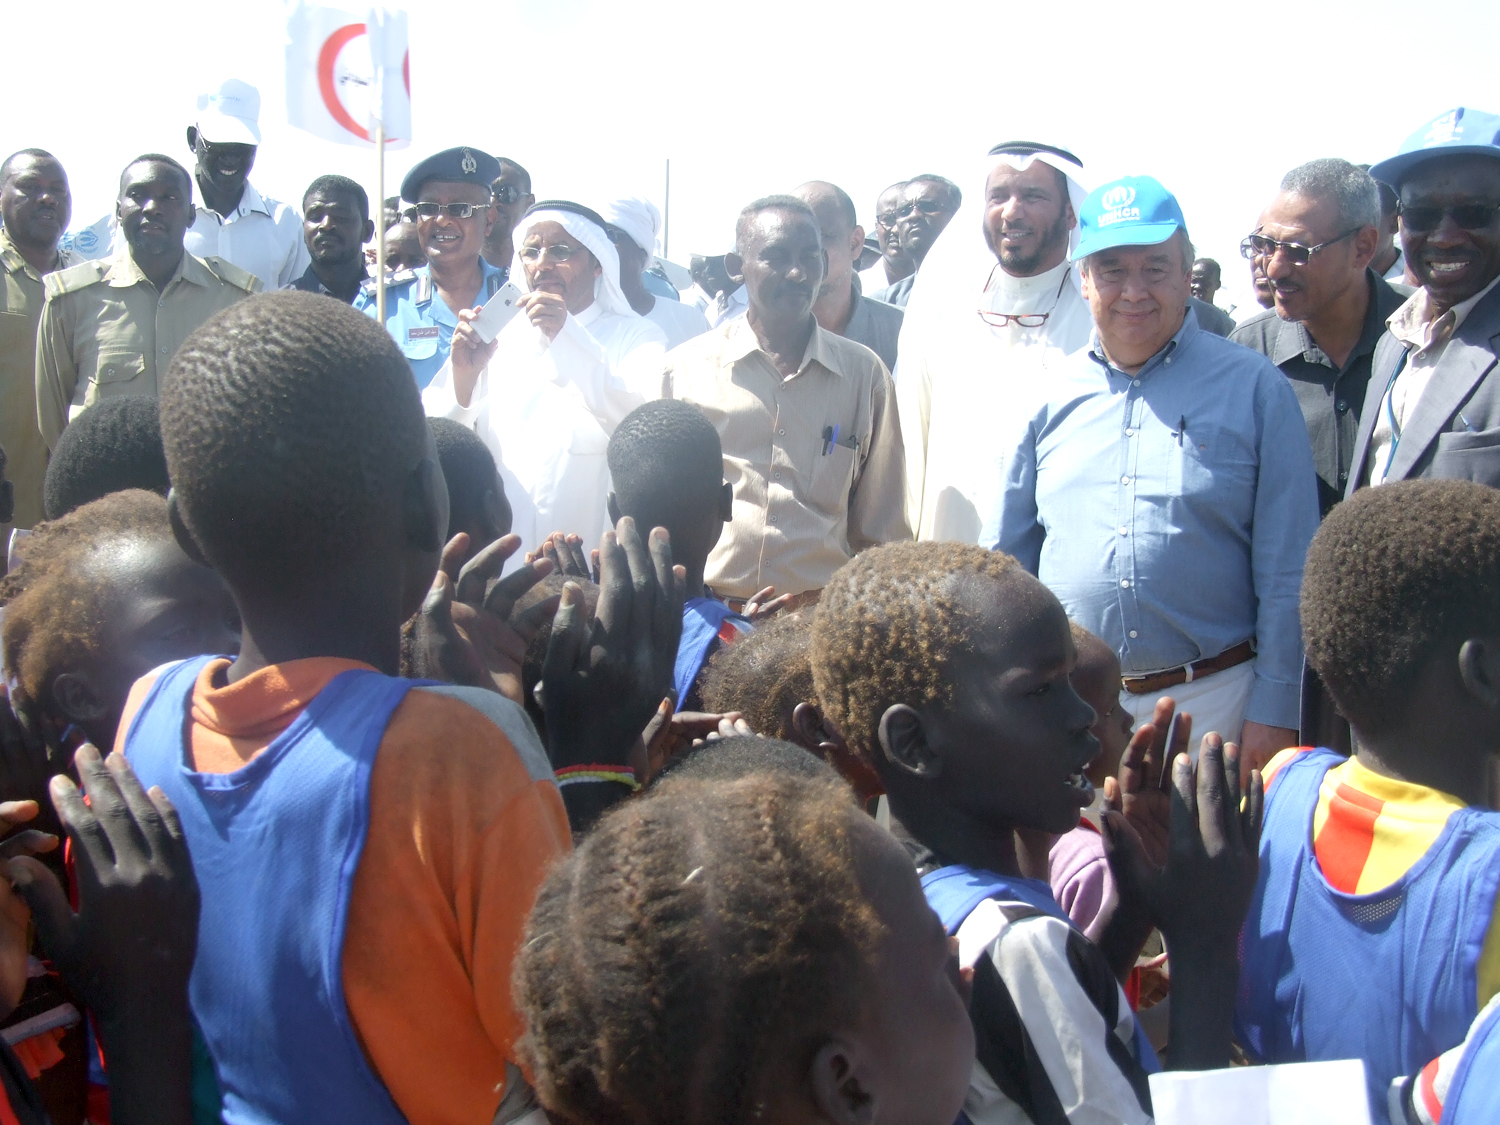 الدكتور عبدالله المعتوق وانطونيو غوتيريس خلال تفقدهما معسكرات اللاجئين بجنوب السودان